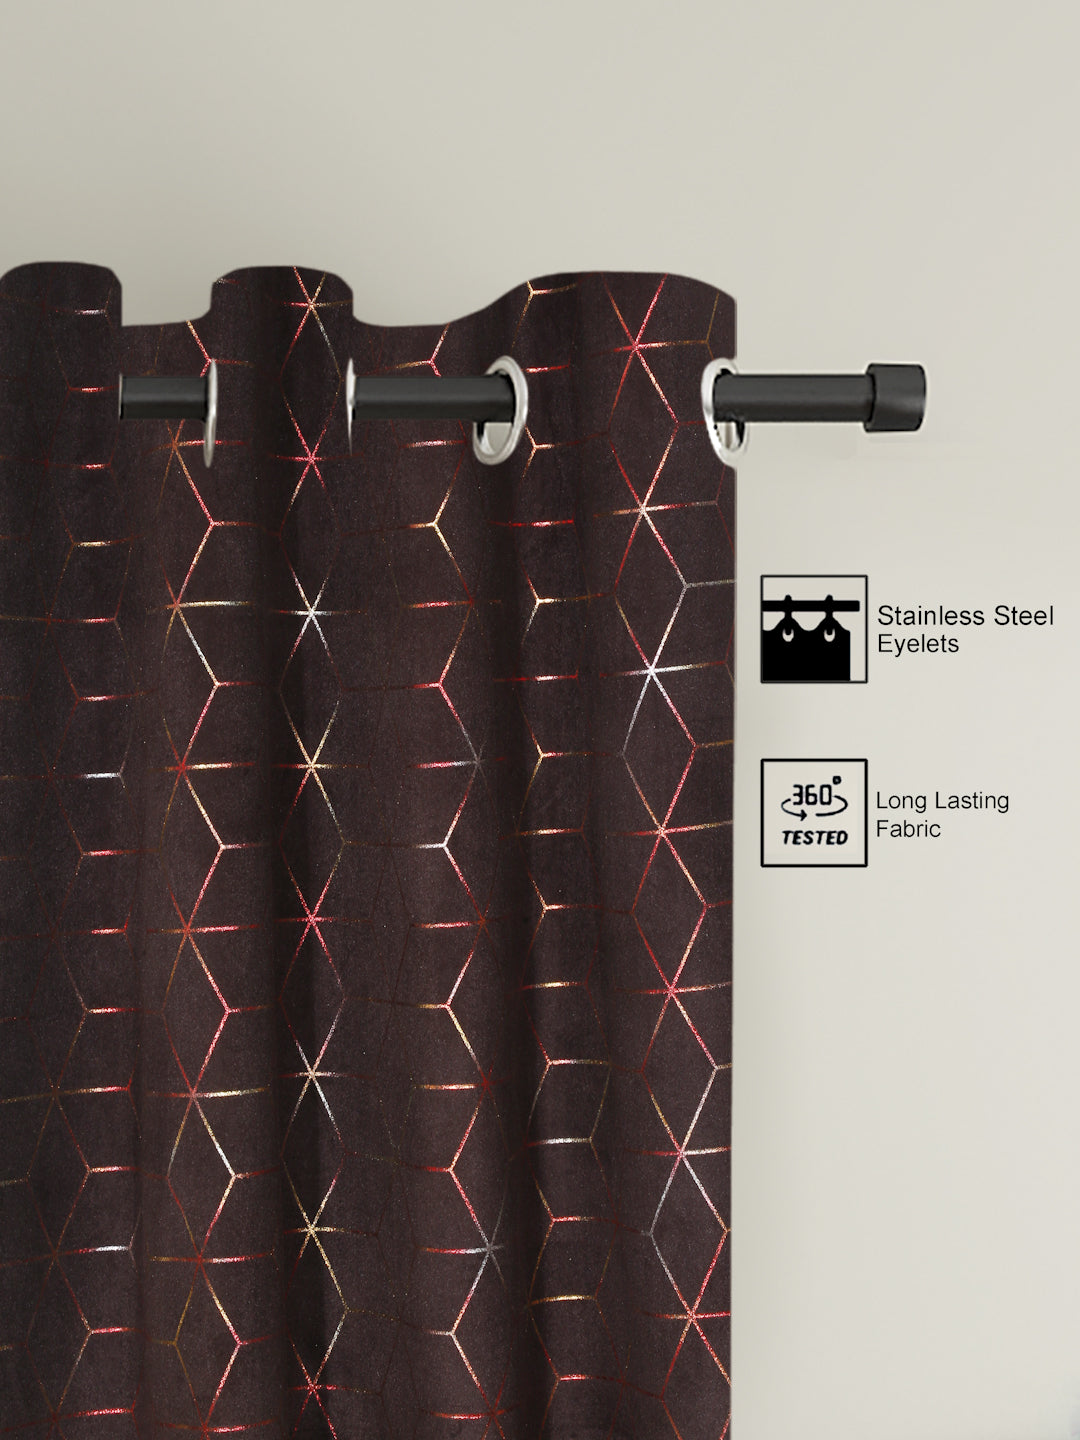 Pack of 2 Velvet Regular Geometric Foil Curtains